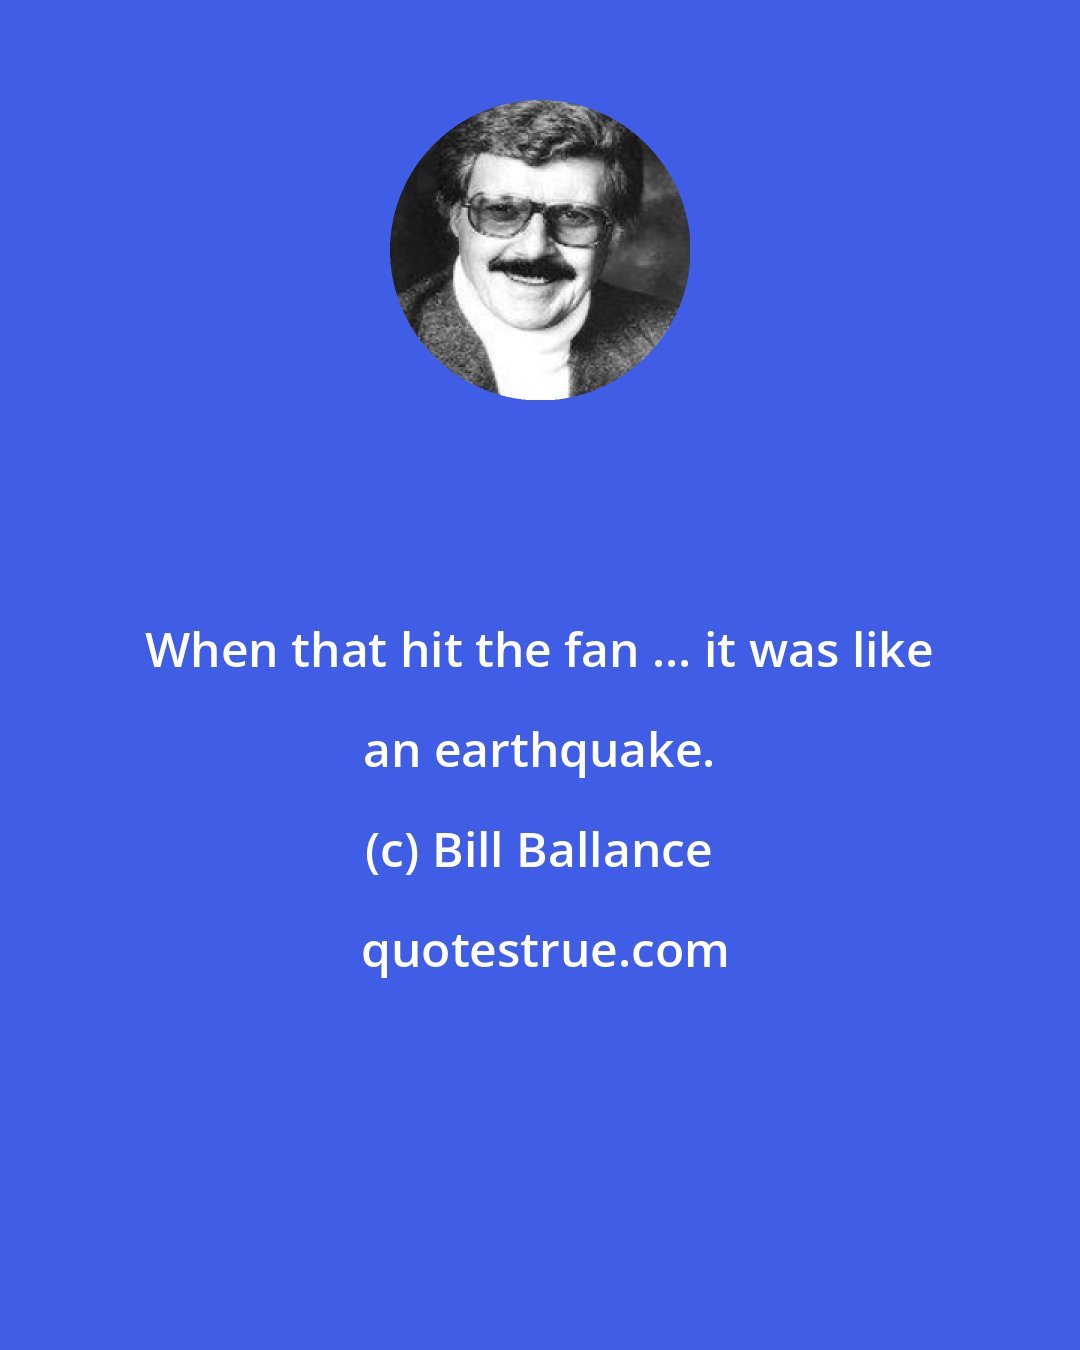 Bill Ballance: When that hit the fan ... it was like an earthquake.